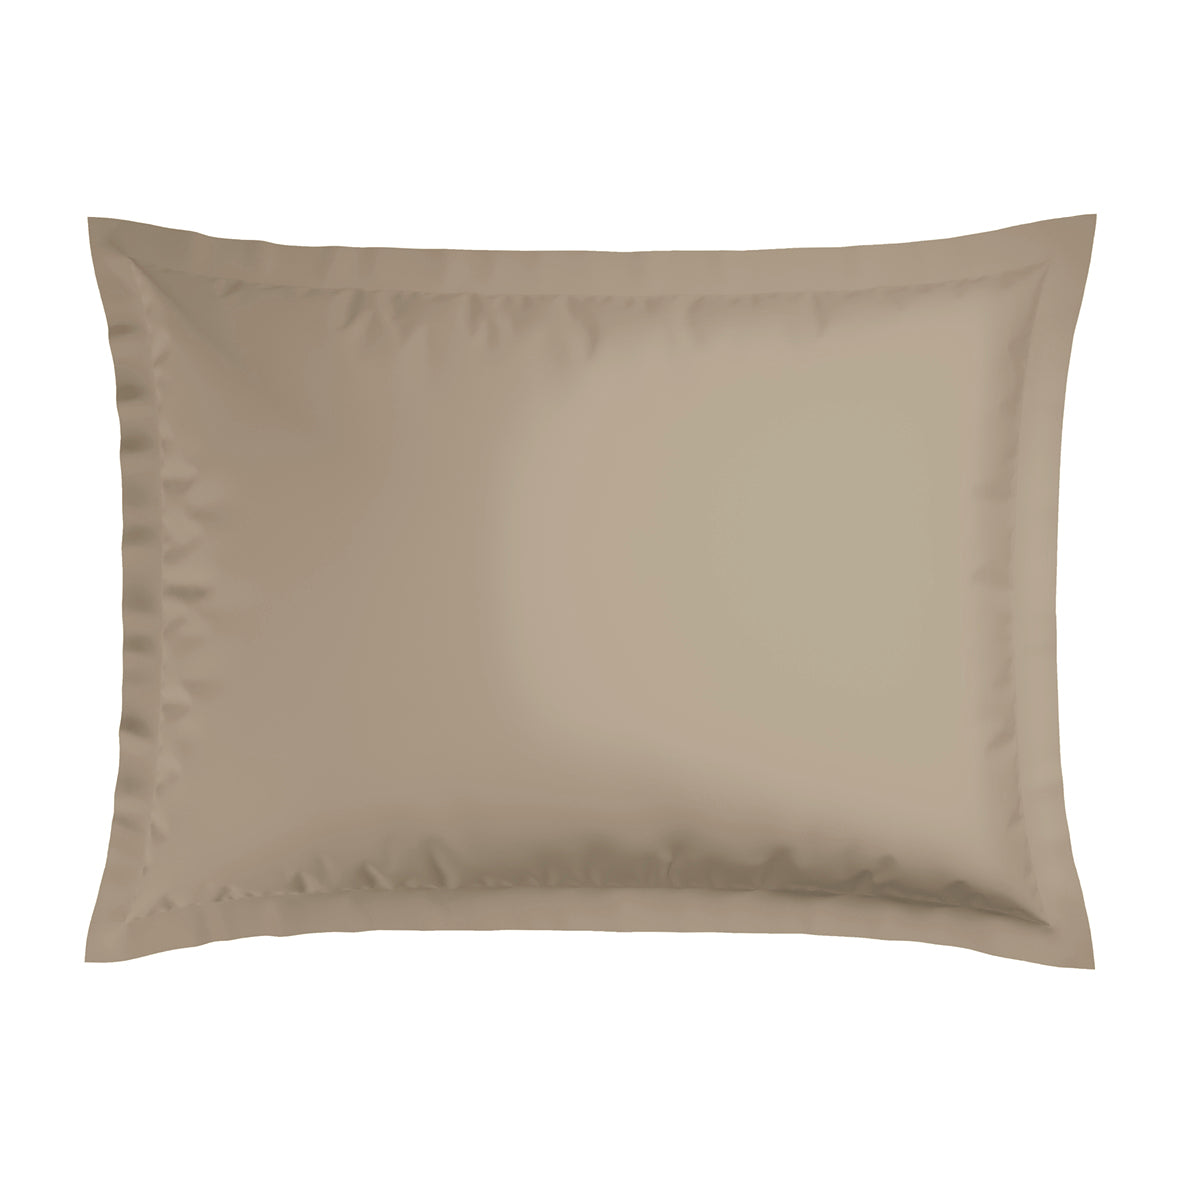 Pillowcase(s) cotton satin - Paris Taupe